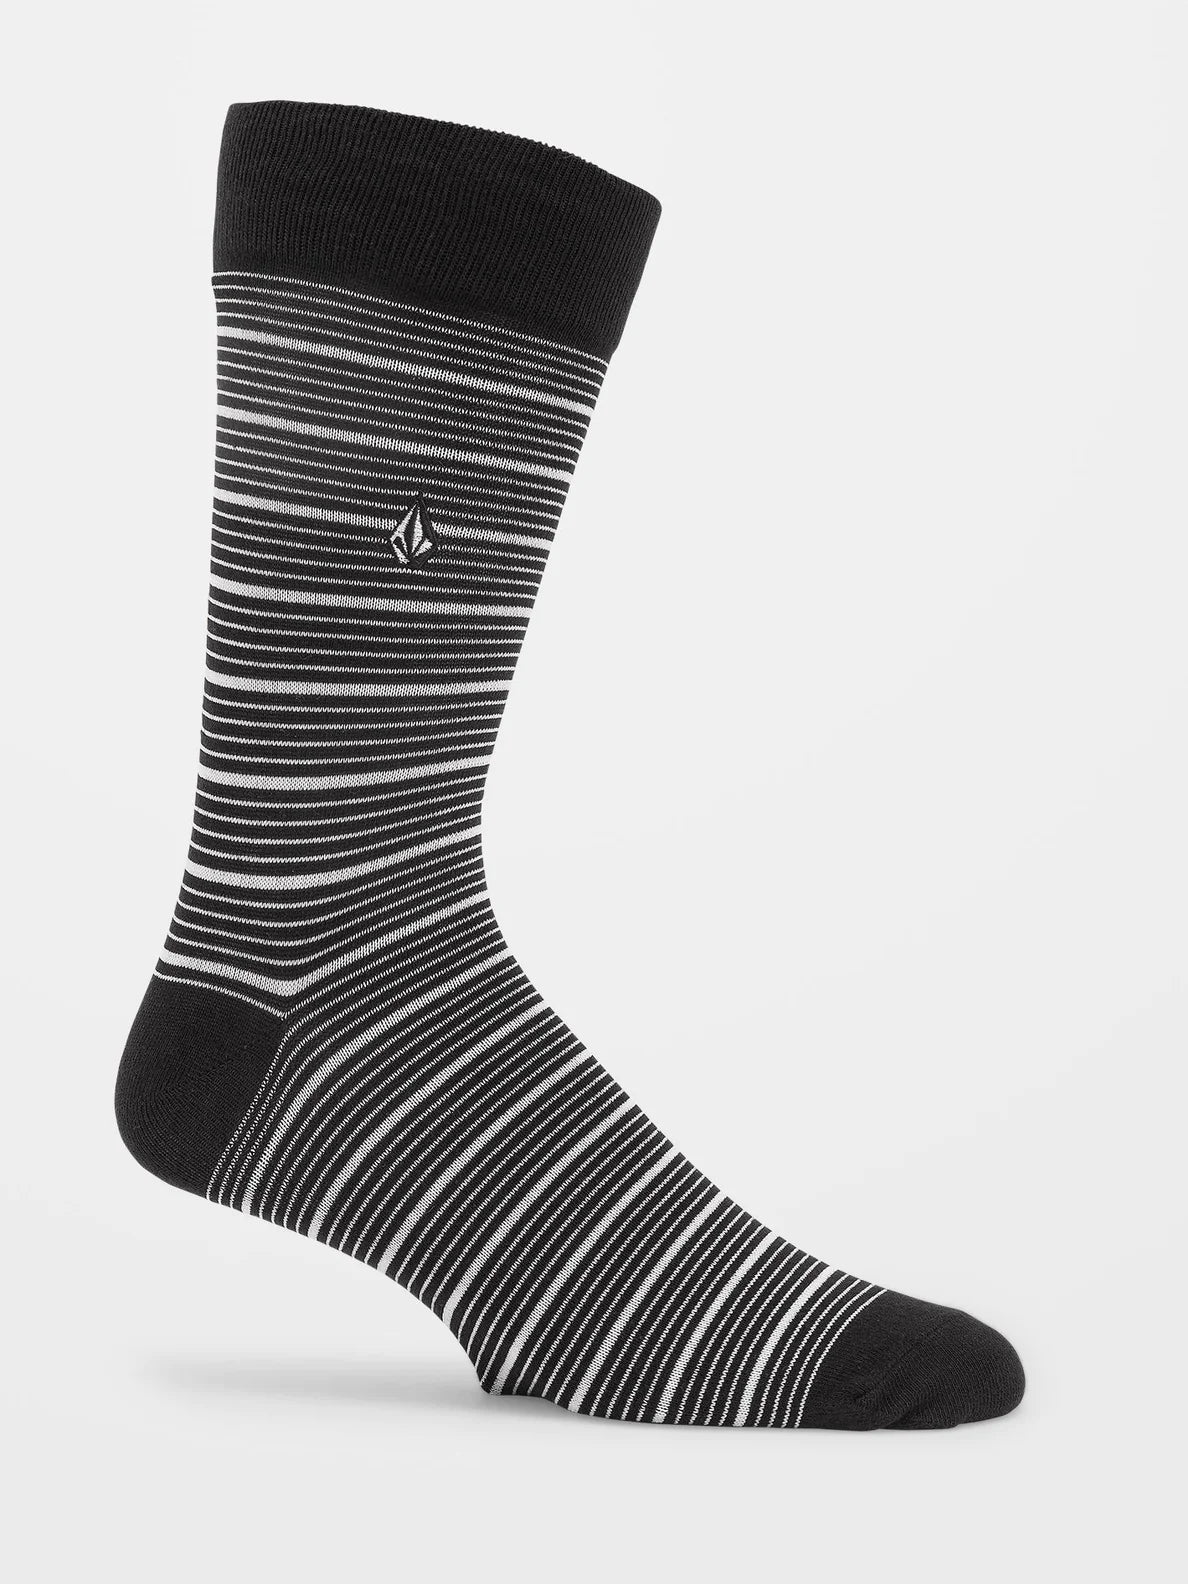 Volcom True Sock Pr Black White | surfdevils.com